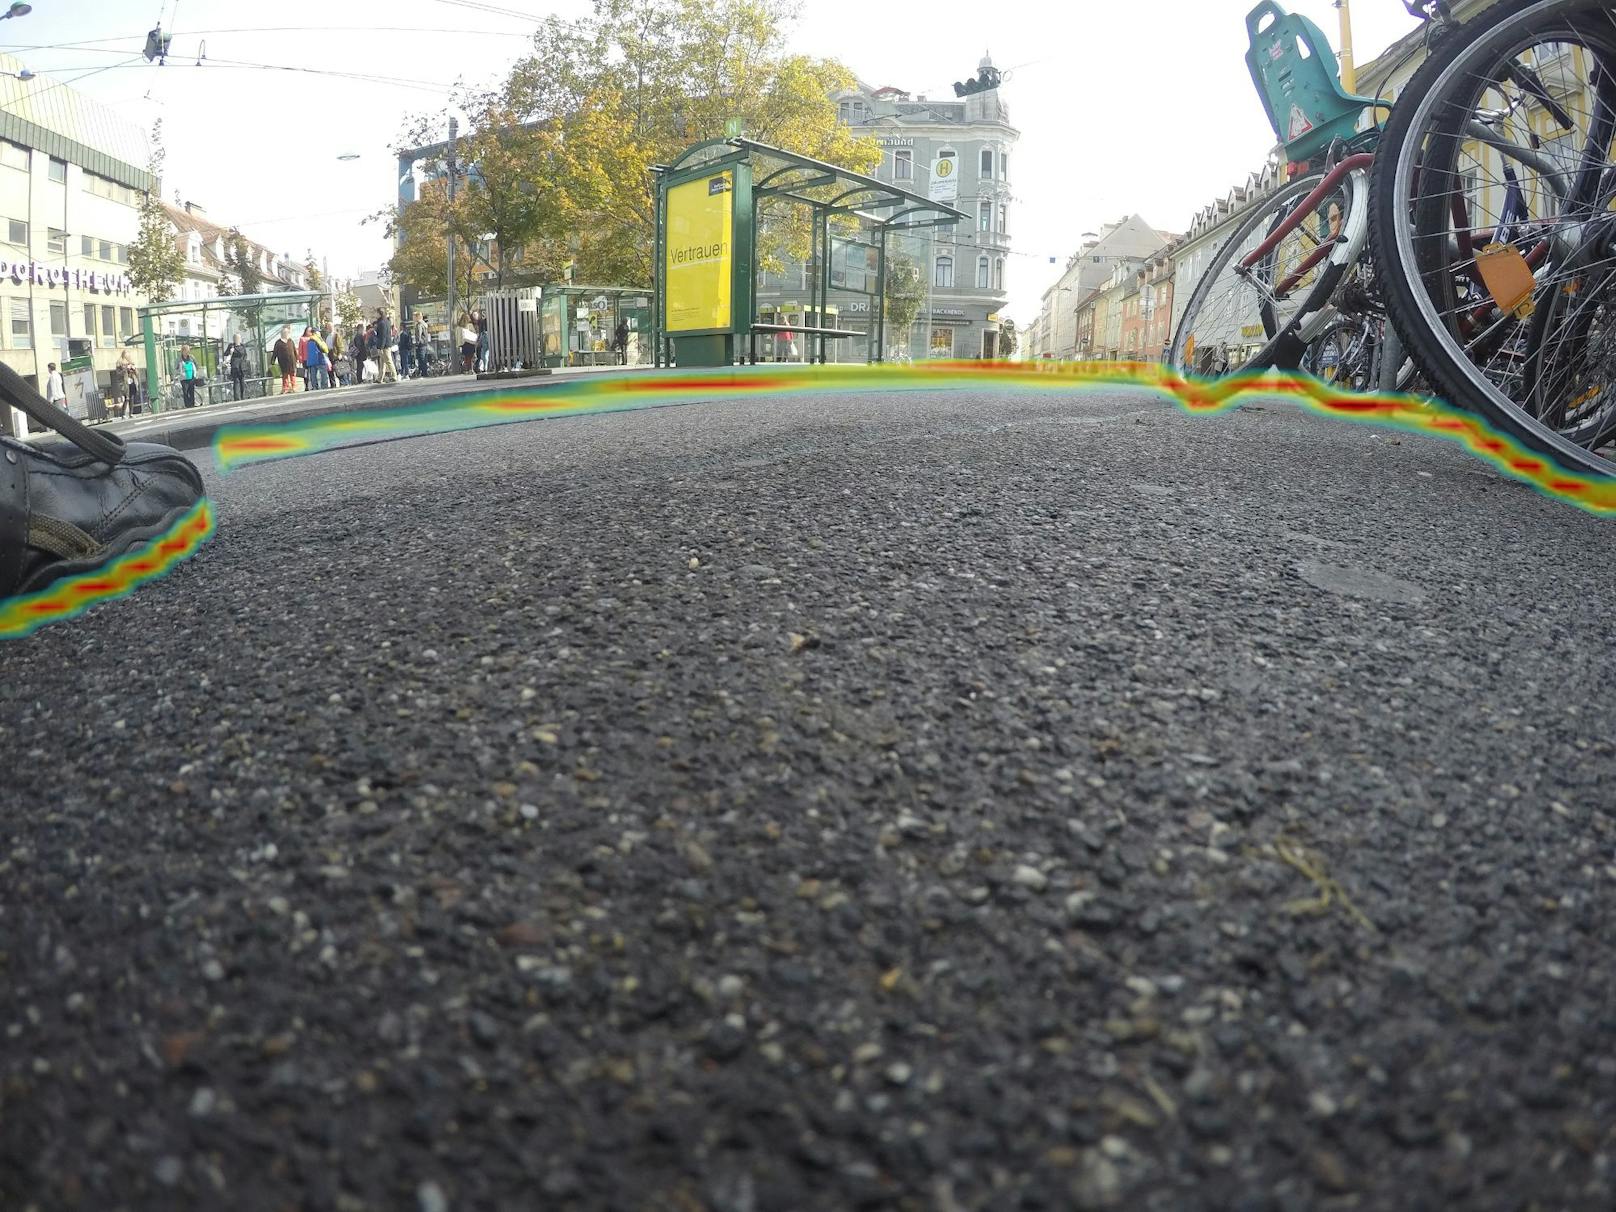 Eine Kameraaufnahme aus der Schuhperspektive: farblich eingegrenzt ist der gefahrlos begehbare Bereich, erkannt und interpretiert durch den Bilderkennungsalgorithmus der TU Graz.